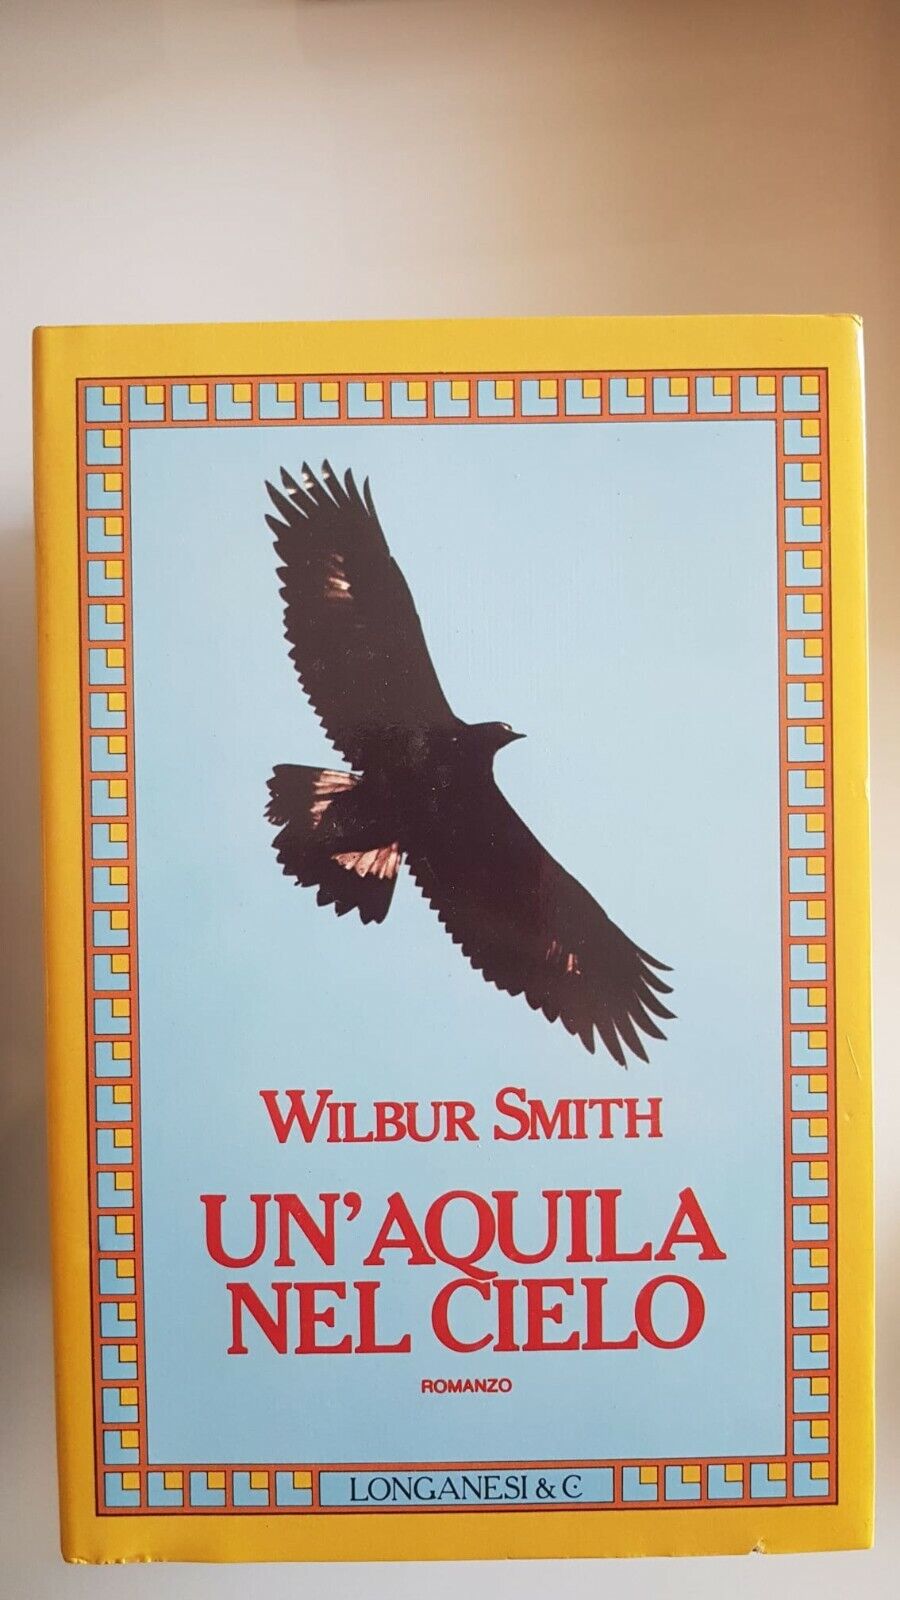 Wilbur Smith - stock di 5 romanzi